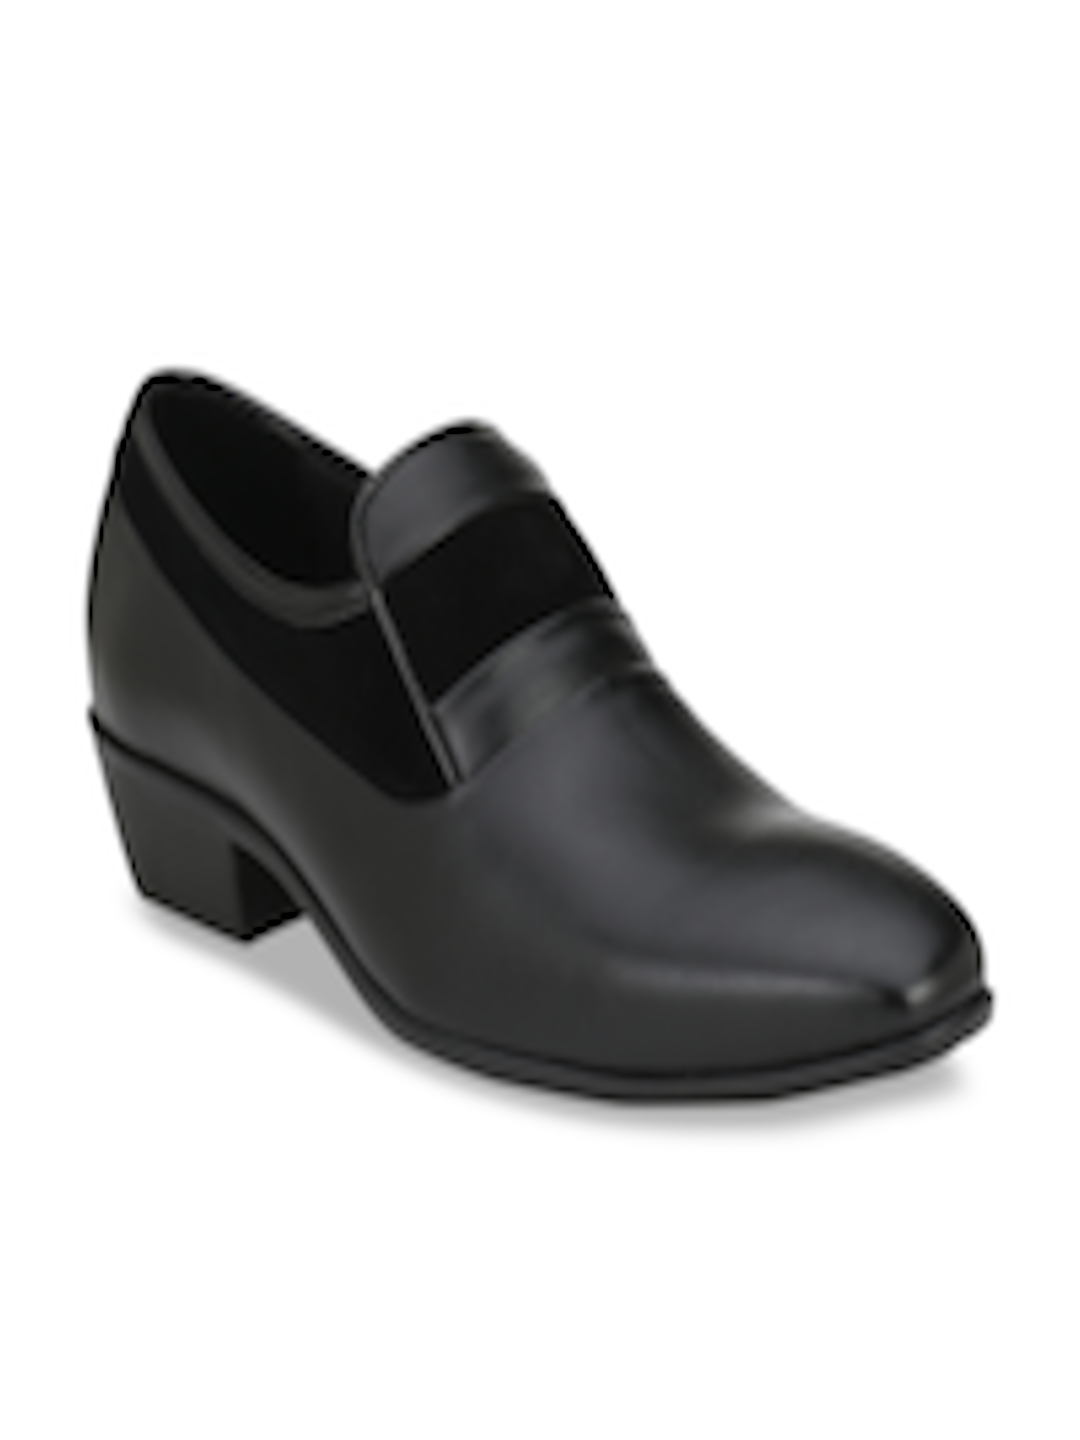 Buy Delize Men Black Solid Formal Slip Ons - Formal Shoes for Men ...